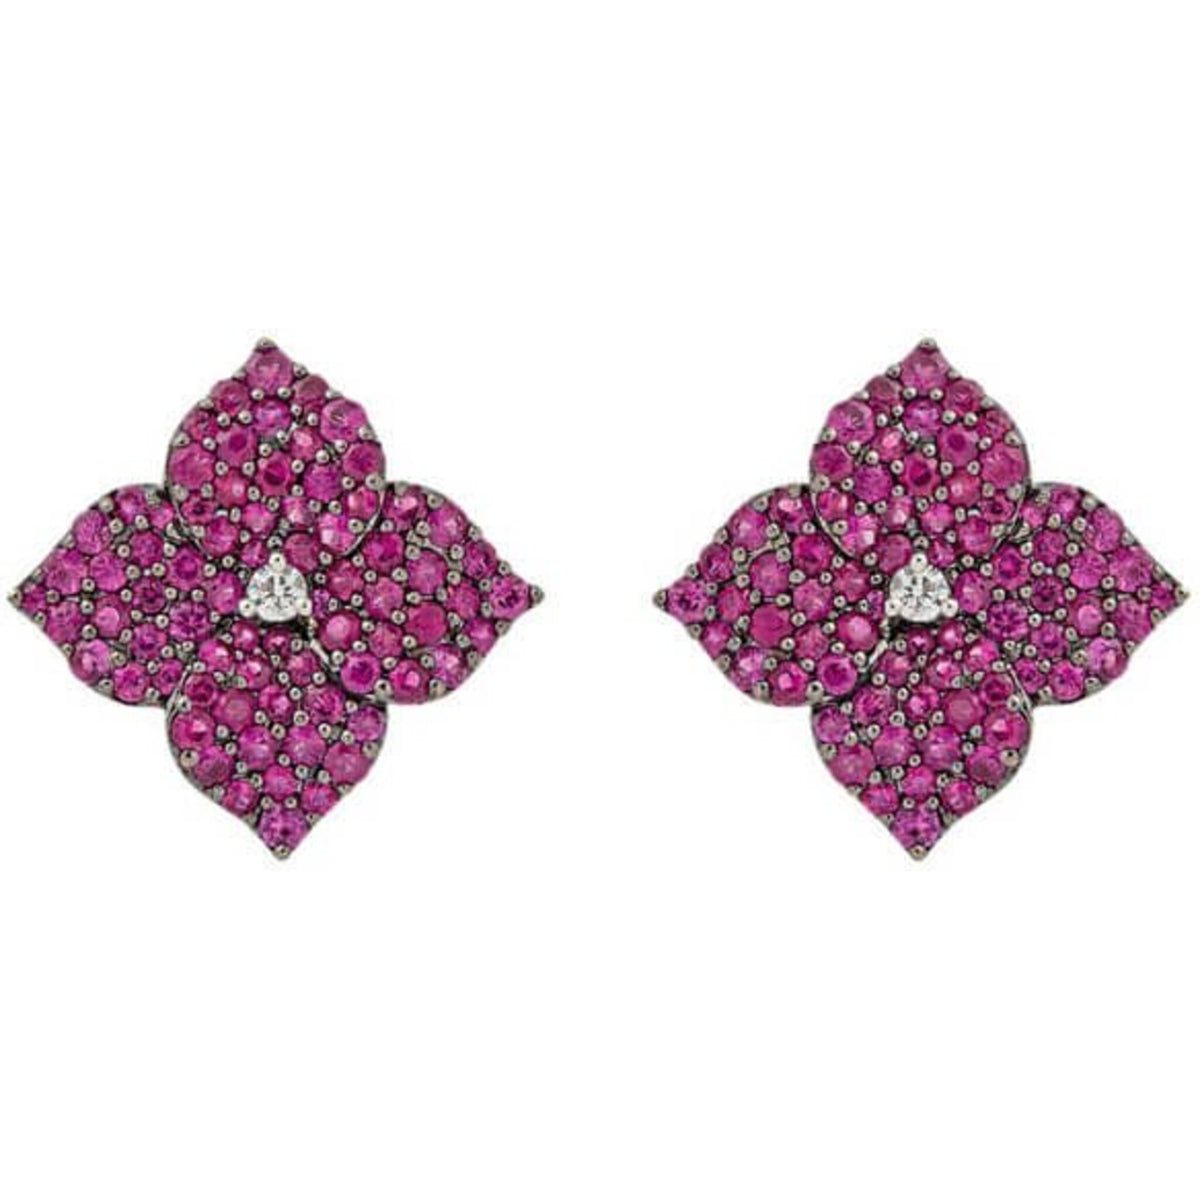 Piranesi Mosaique Small Flower Earrings Deep Pink Sapphire